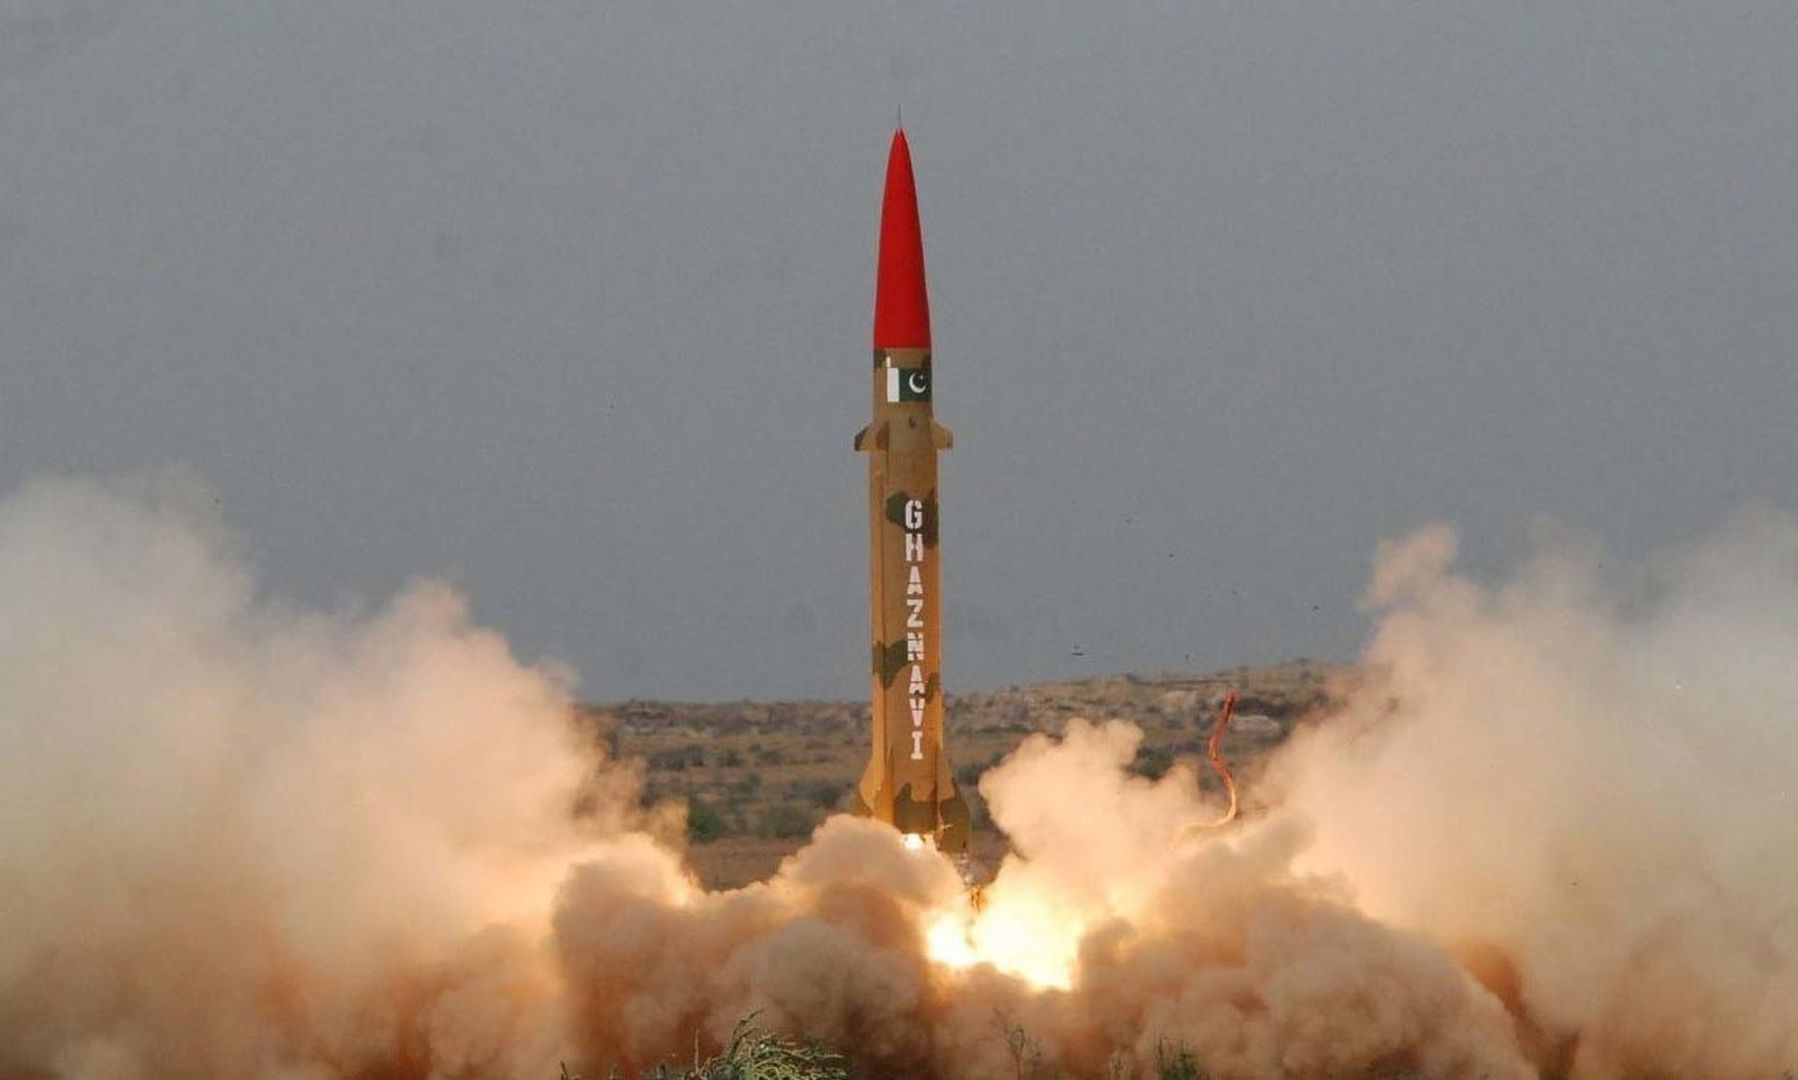 ballistic missile Ghaznavi